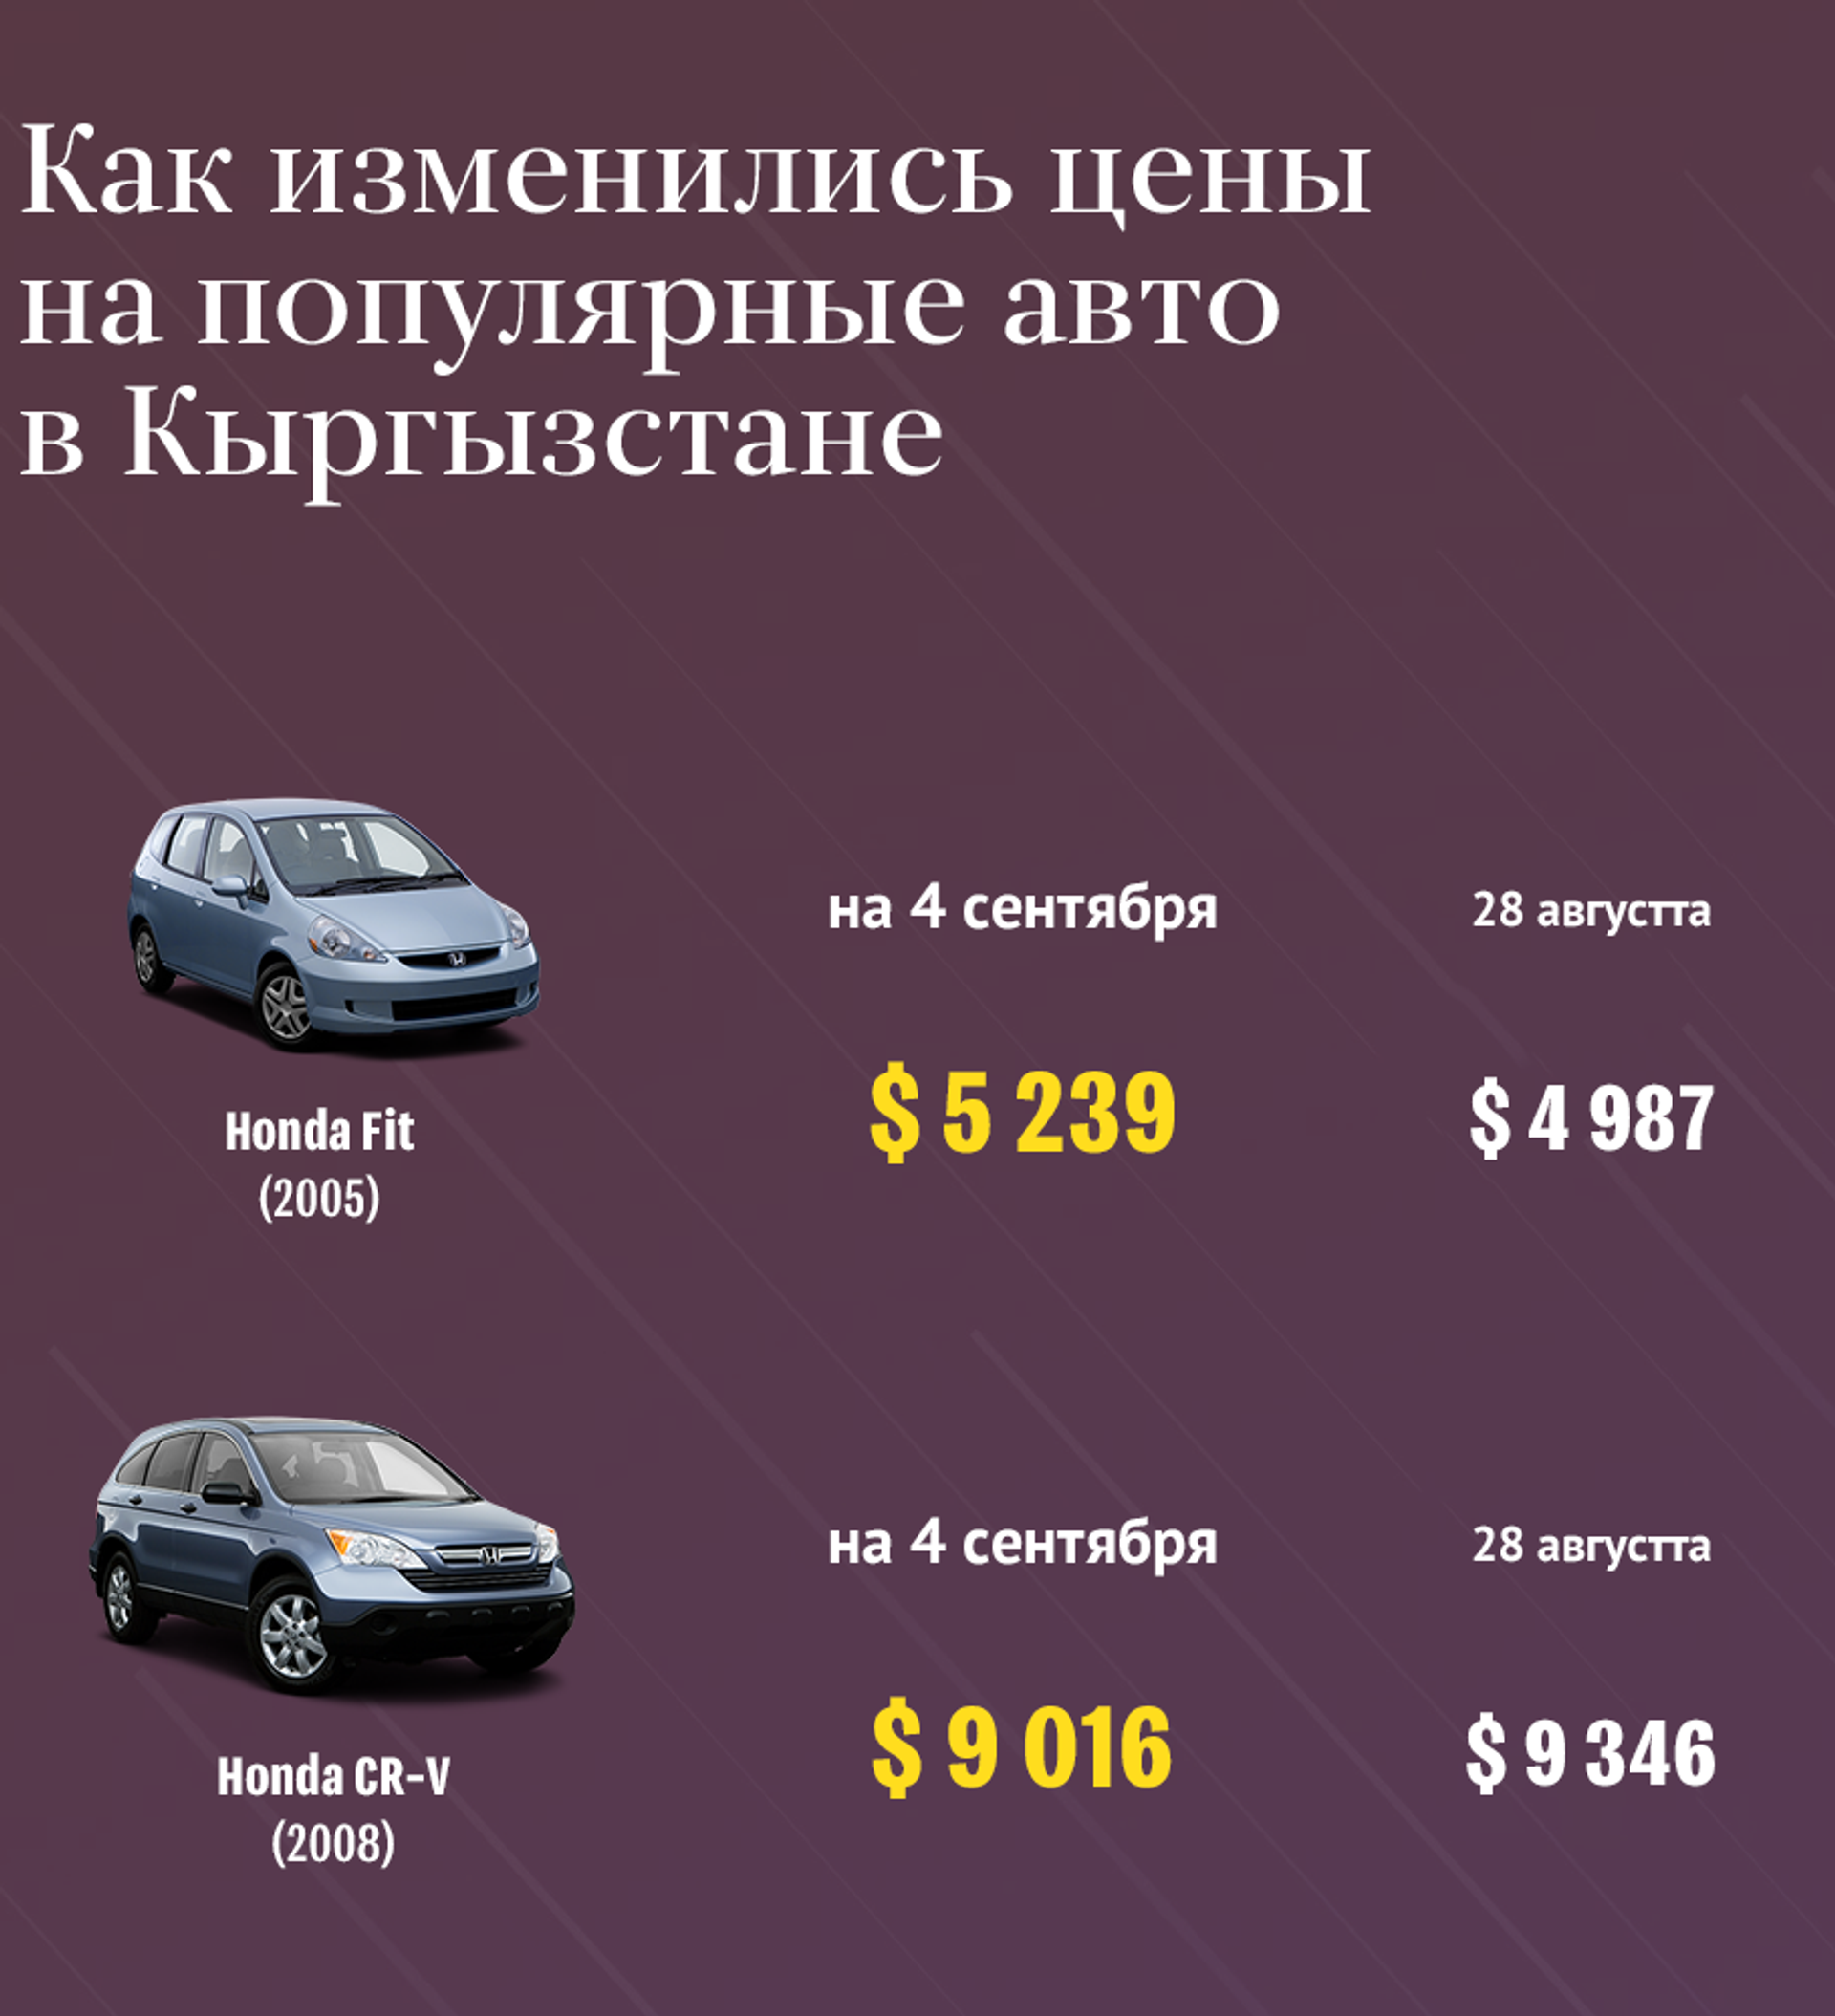 Как изменится цена авто с 1 апреля. Как менялись цены на автомобили. Самая распространенная машина в Кыргызстане. Какая машина самая популярная в Кыргызстане. Обзор авторынка Бишкека.